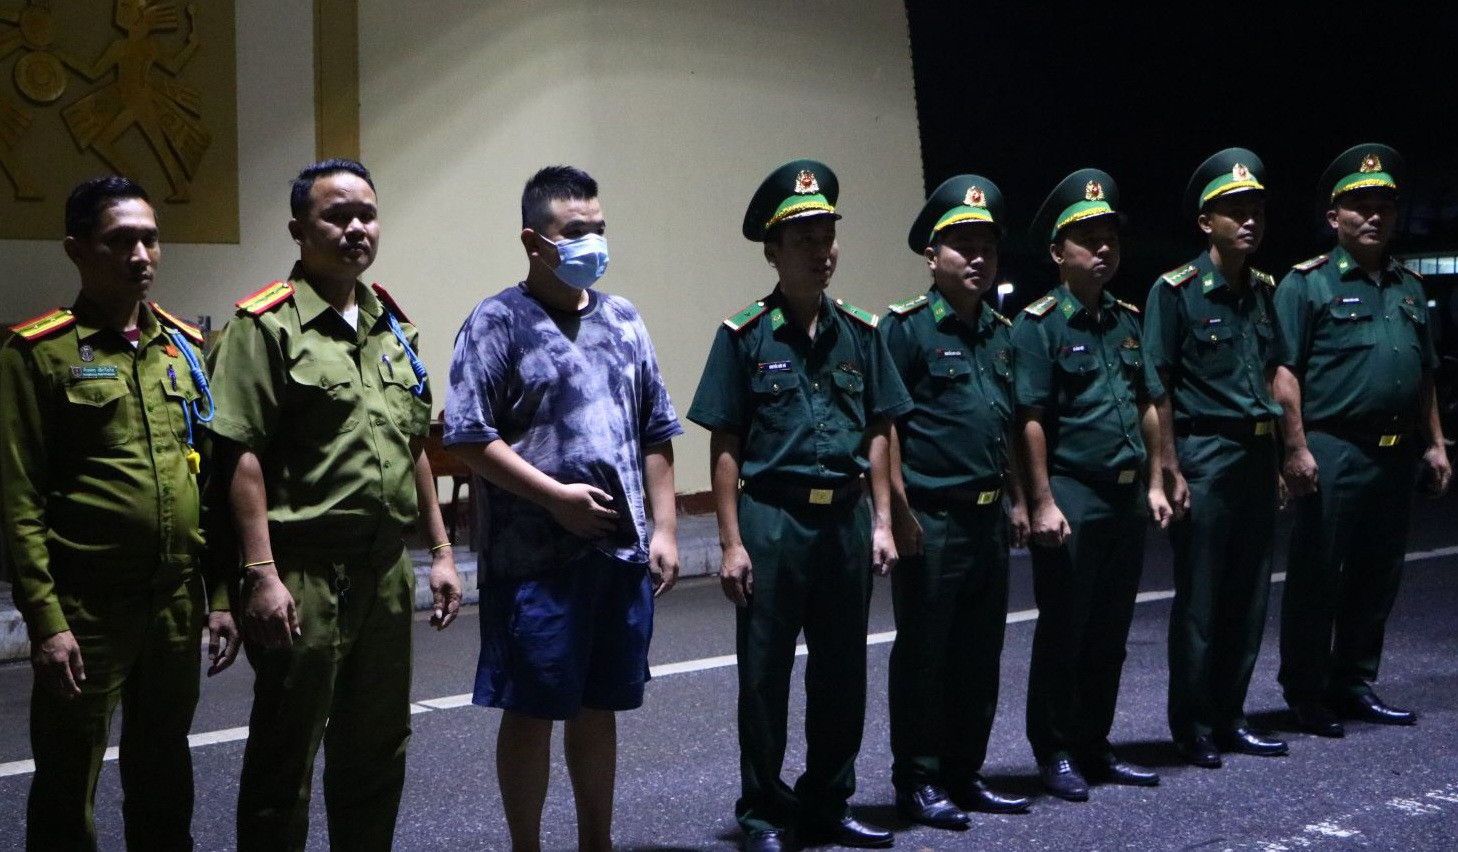 Tiếp nhận thông tin, Đồn Biên phòng Cửa khẩu Quốc tế Lao Bảo phối hợp các lực lượng chức năng tiến hành giải cứu anh Nguyễn Đức D.